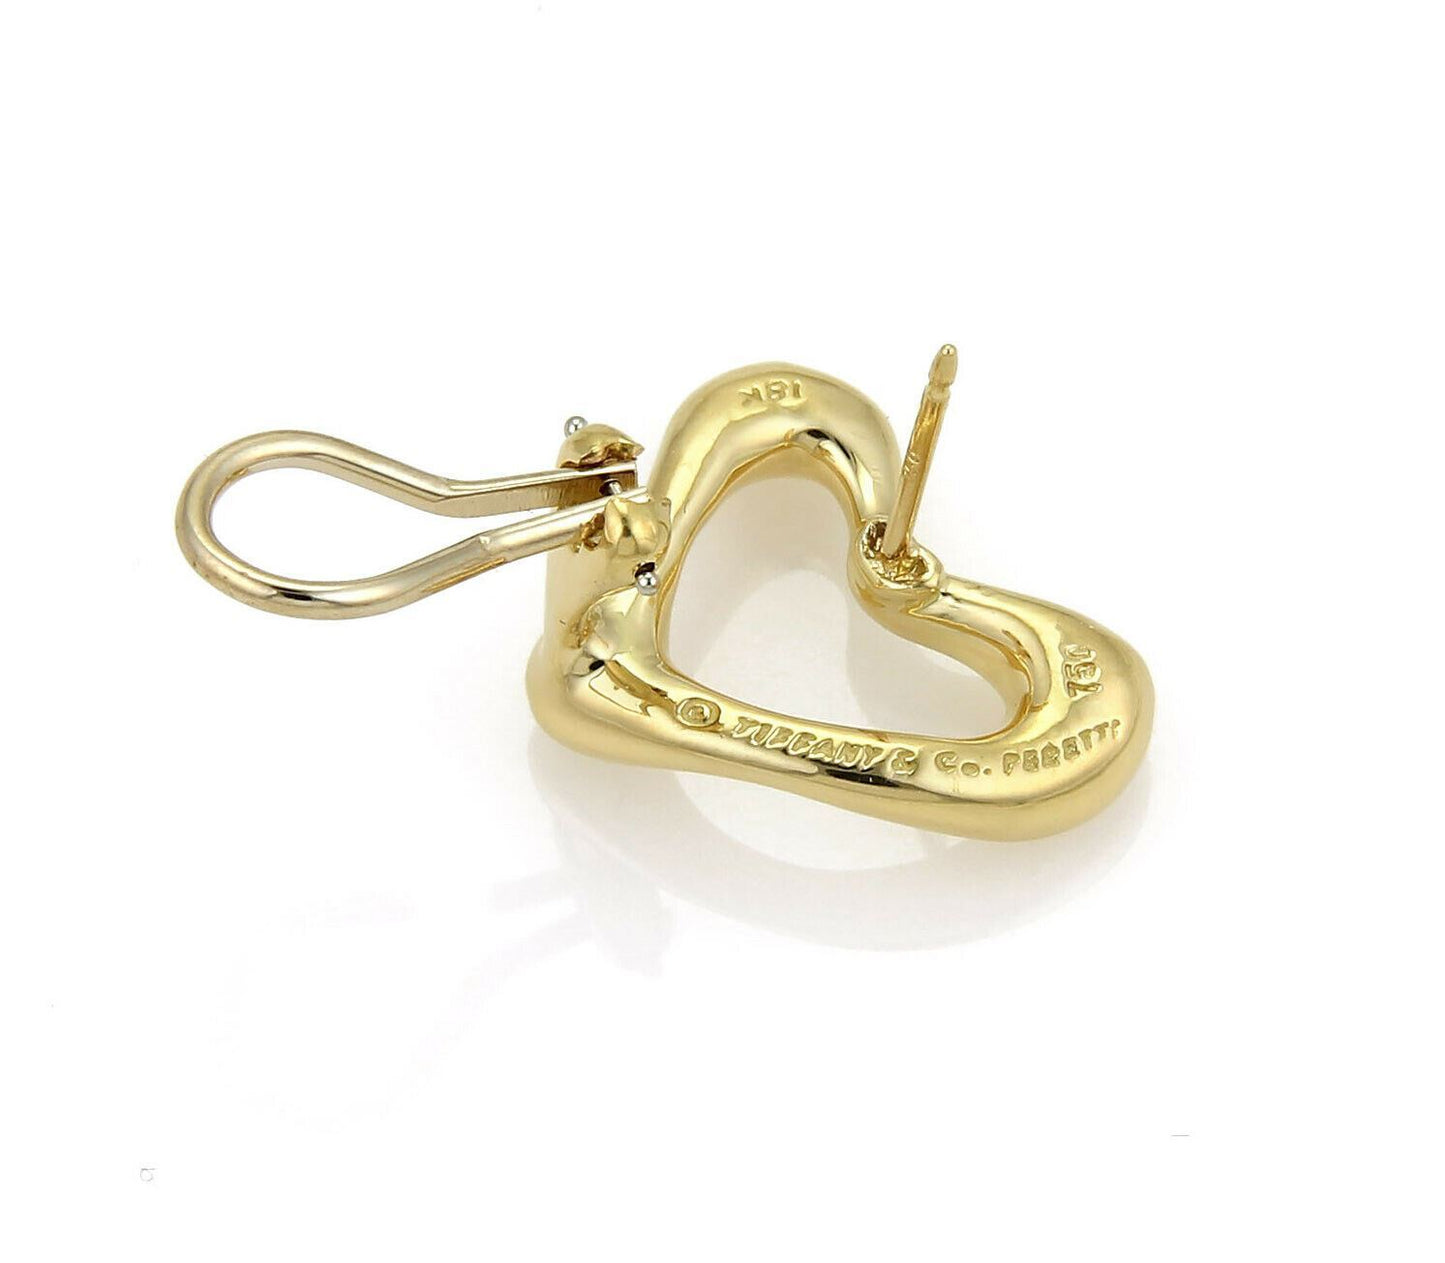 Tiffany & Co. Peretti 18k Yellow Gold Open Heart Post Clip Earrings